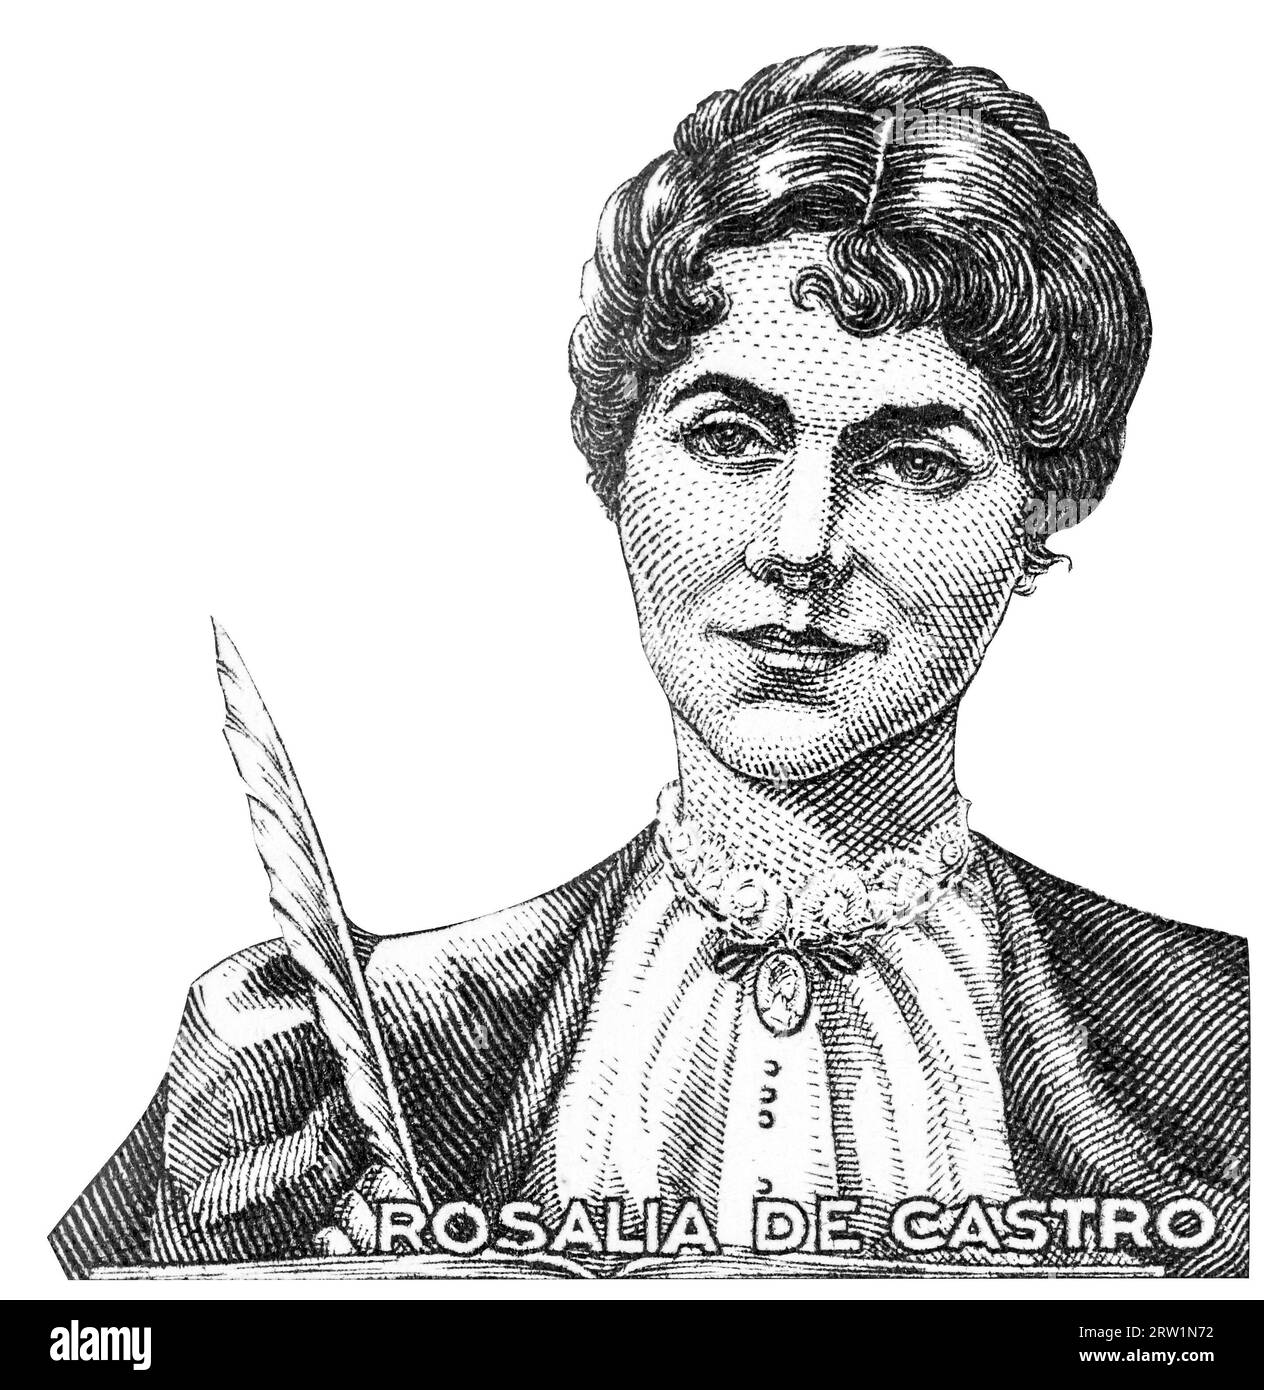 SPAGNA - CIRCA 1968: Un francobollo stampato in Spagna raffigura Rosalia de Castro scrittore romanticista e poeta galiziano intorno al 1968 Foto Stock